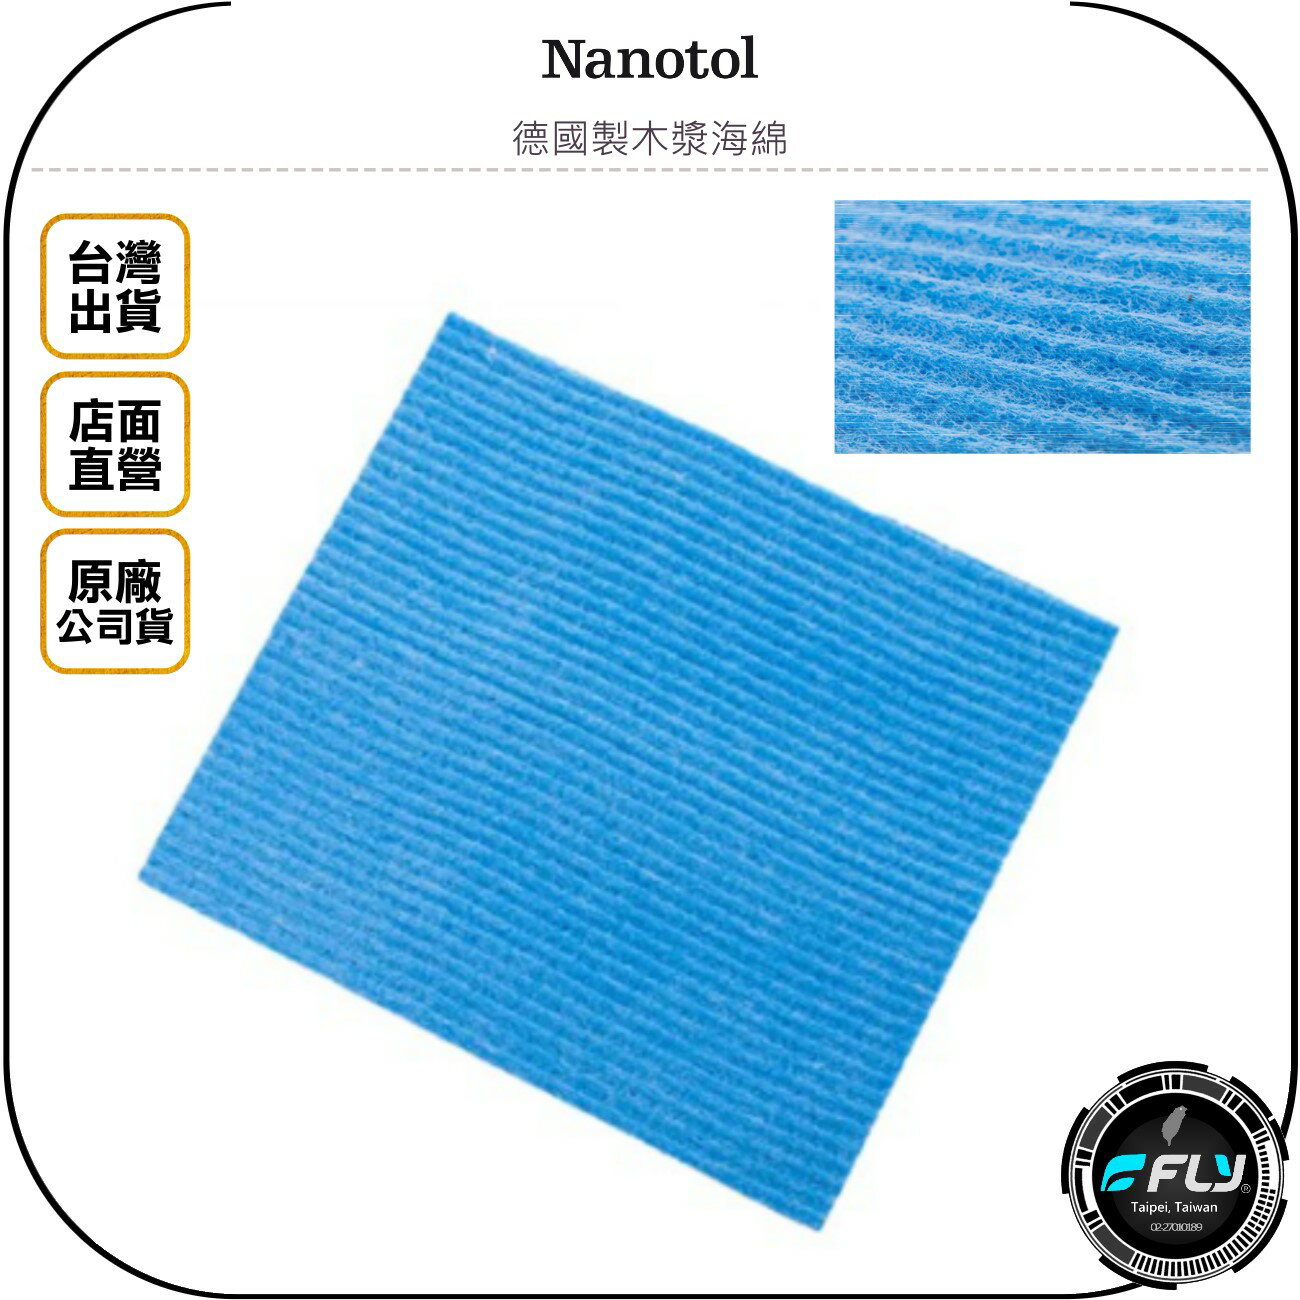 《飛翔無線3C》Nanotol 德國製木漿海綿◉公司貨◉居家擦拭清潔◉極佳吸水性